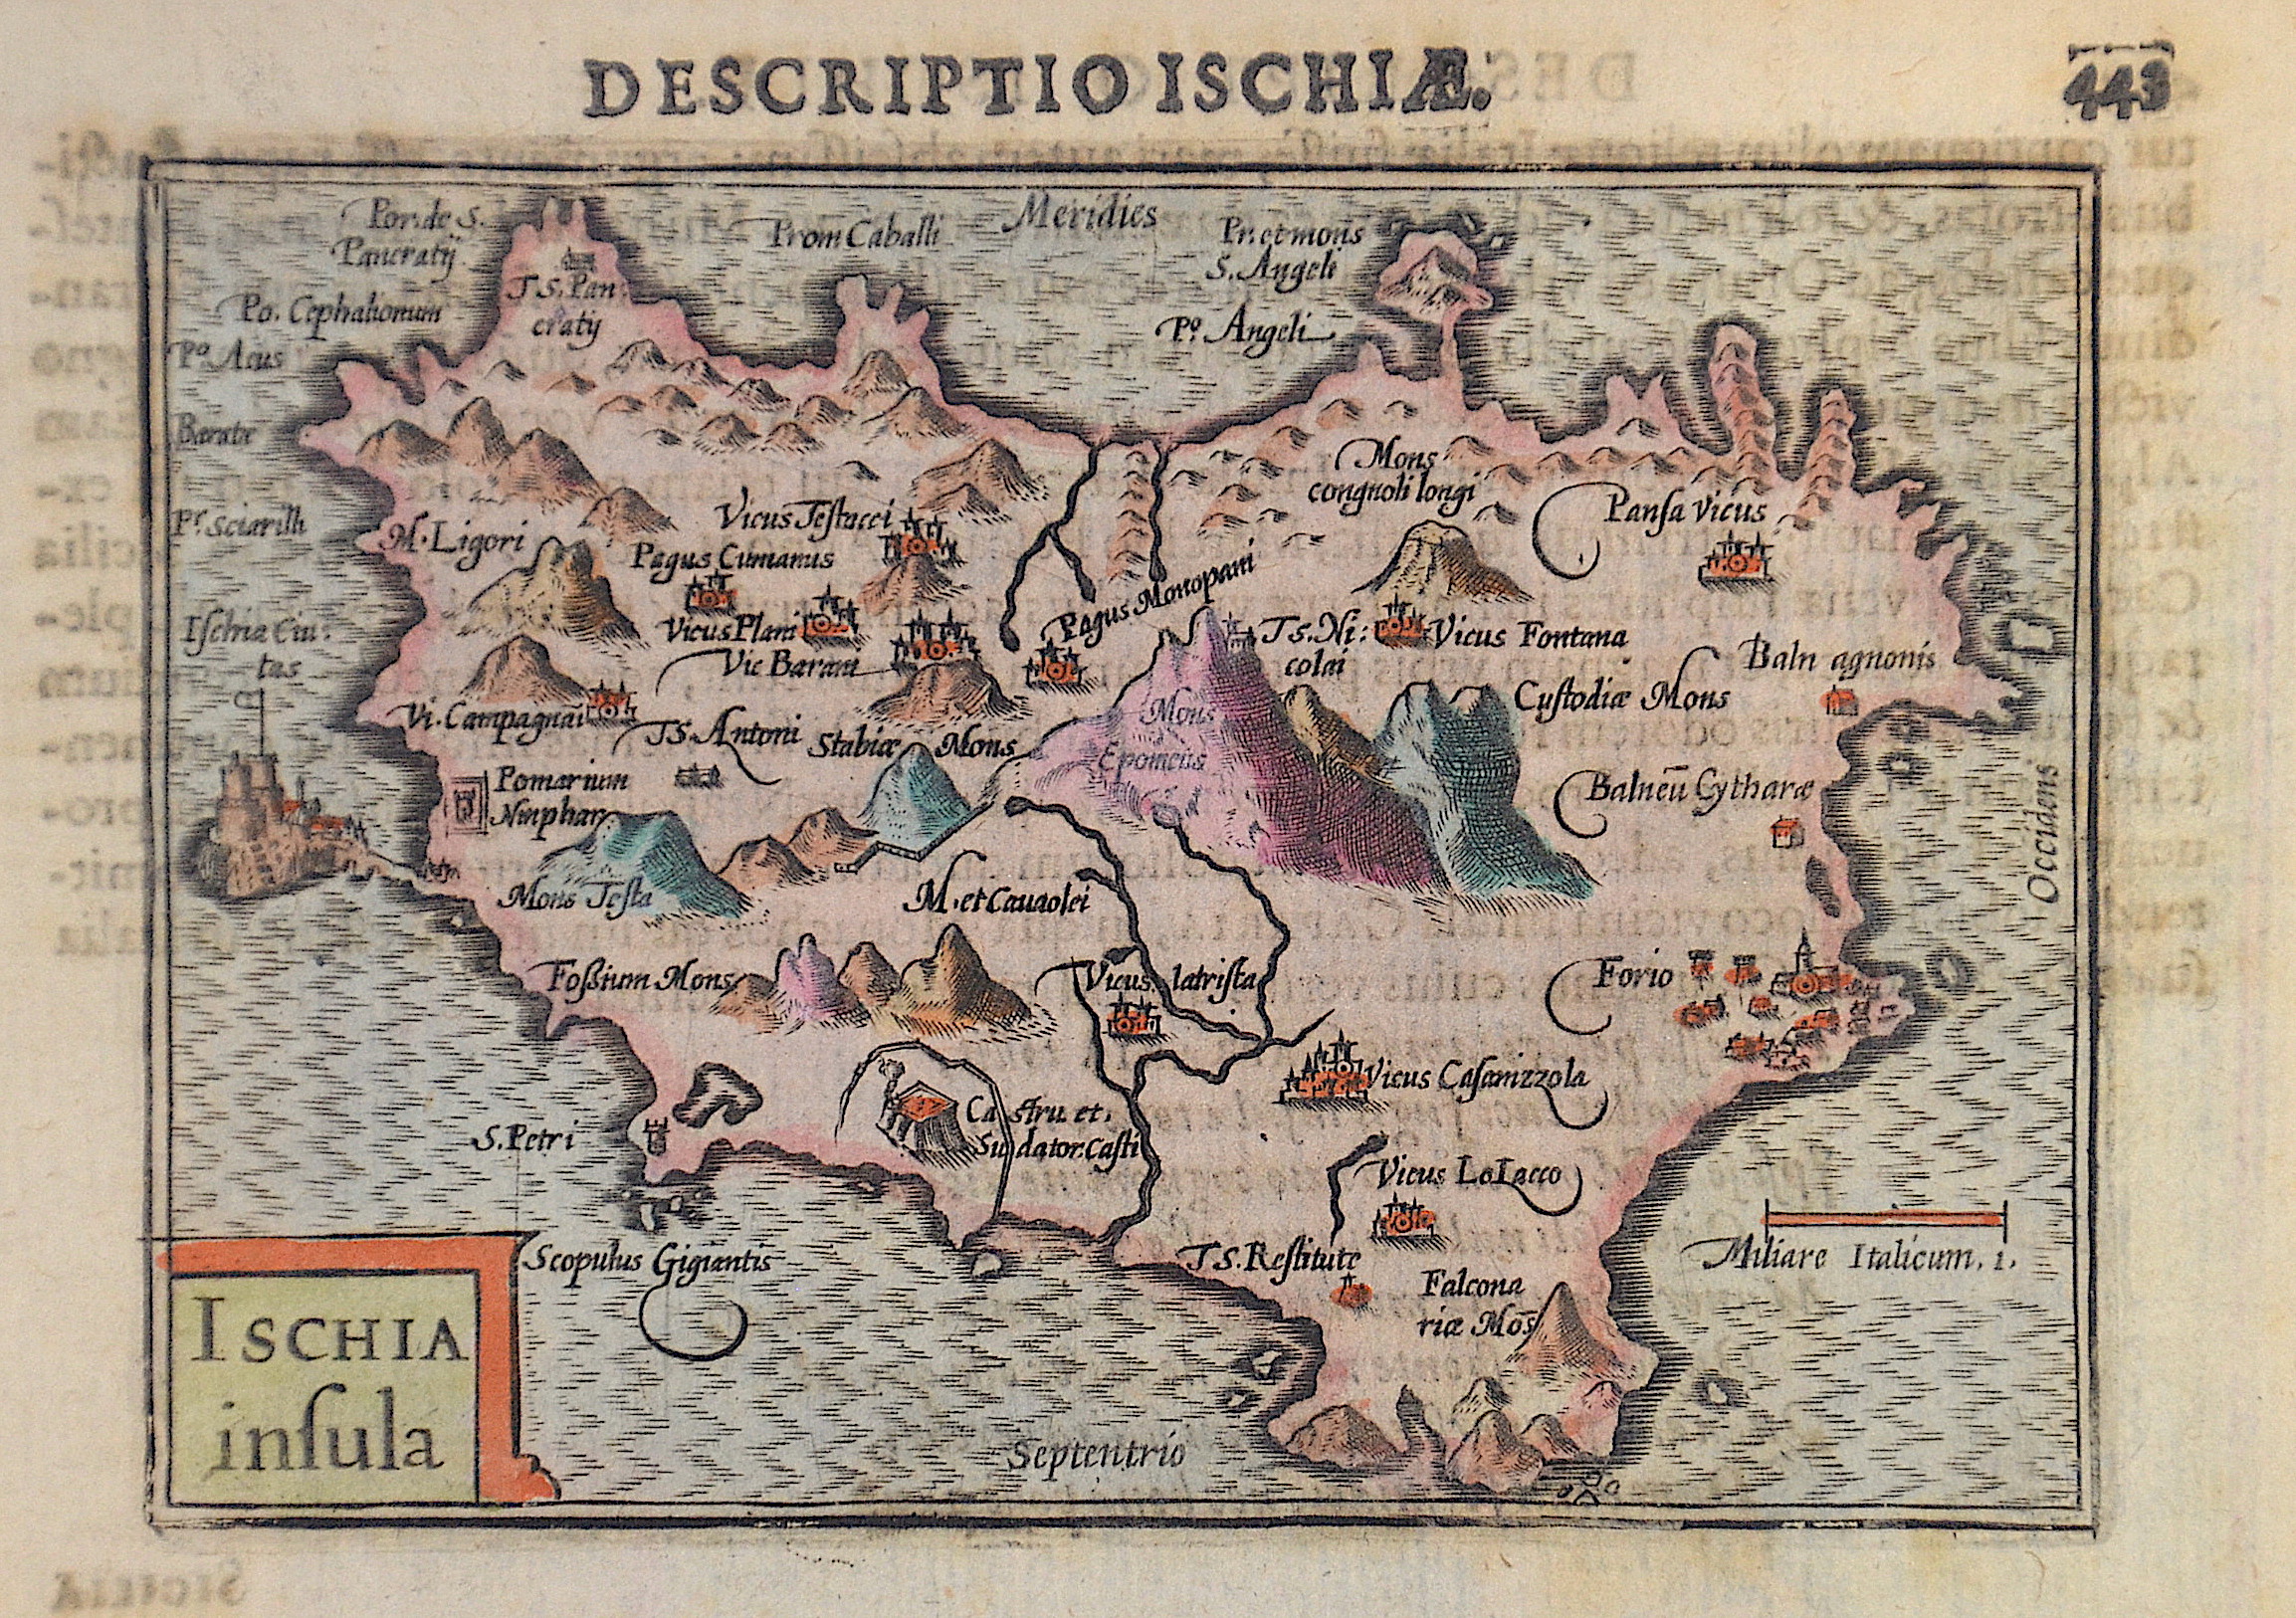 Bertius Petrus Descriptio Ischiae. 443 / Ischia insula